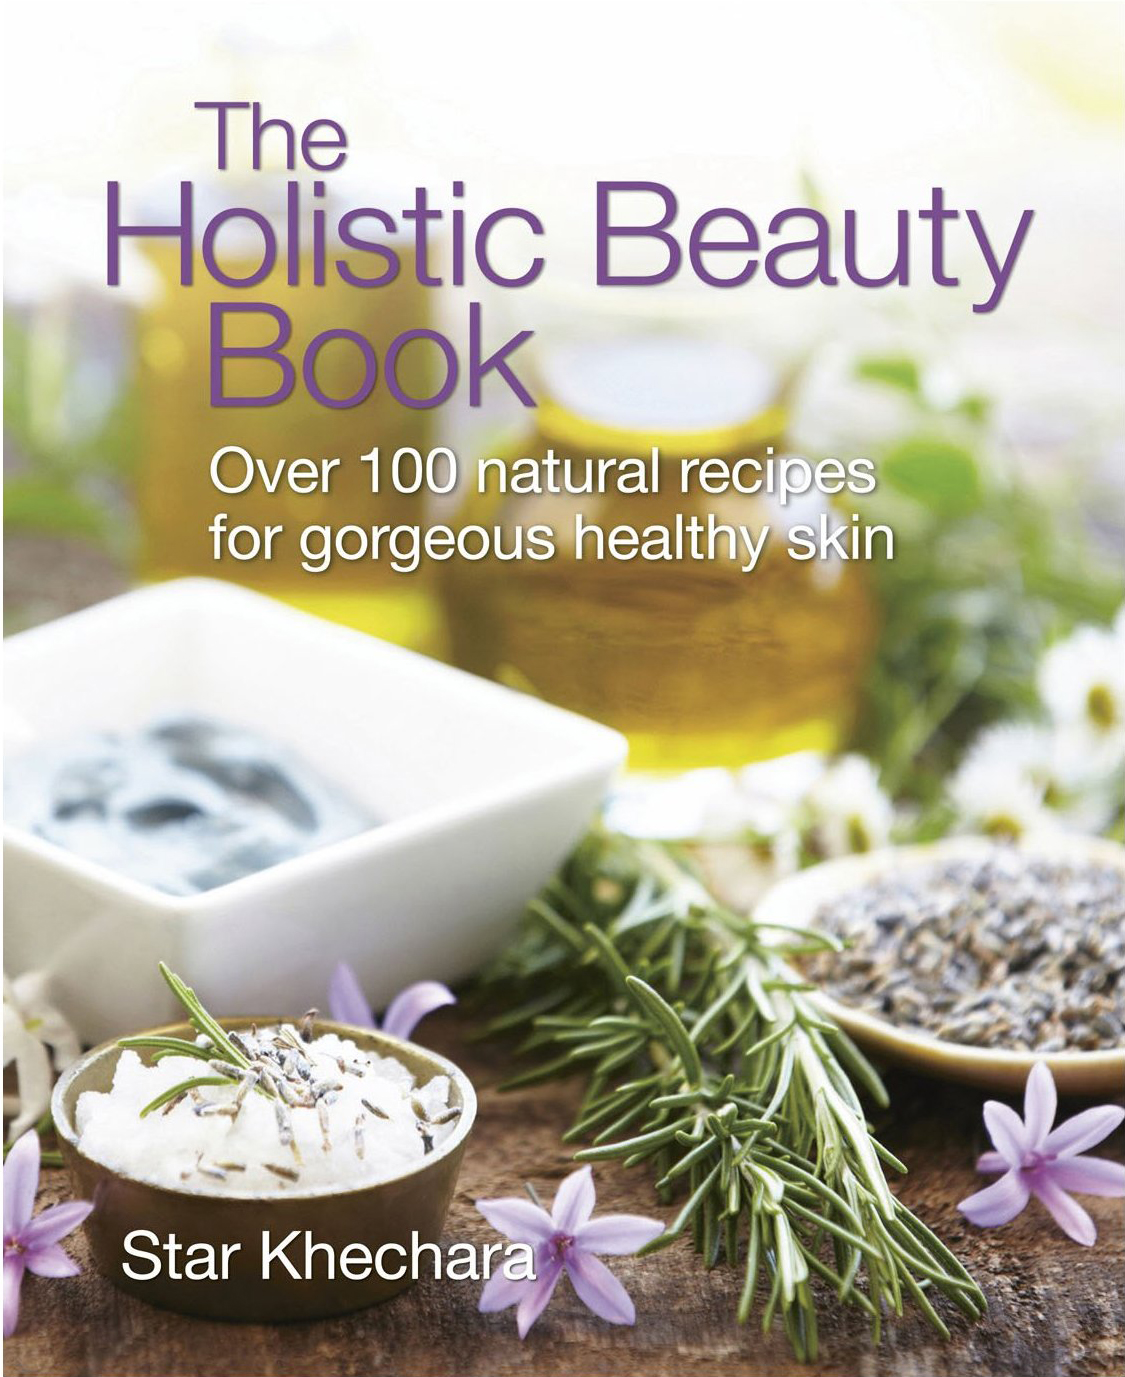 Holistic Beauty Book